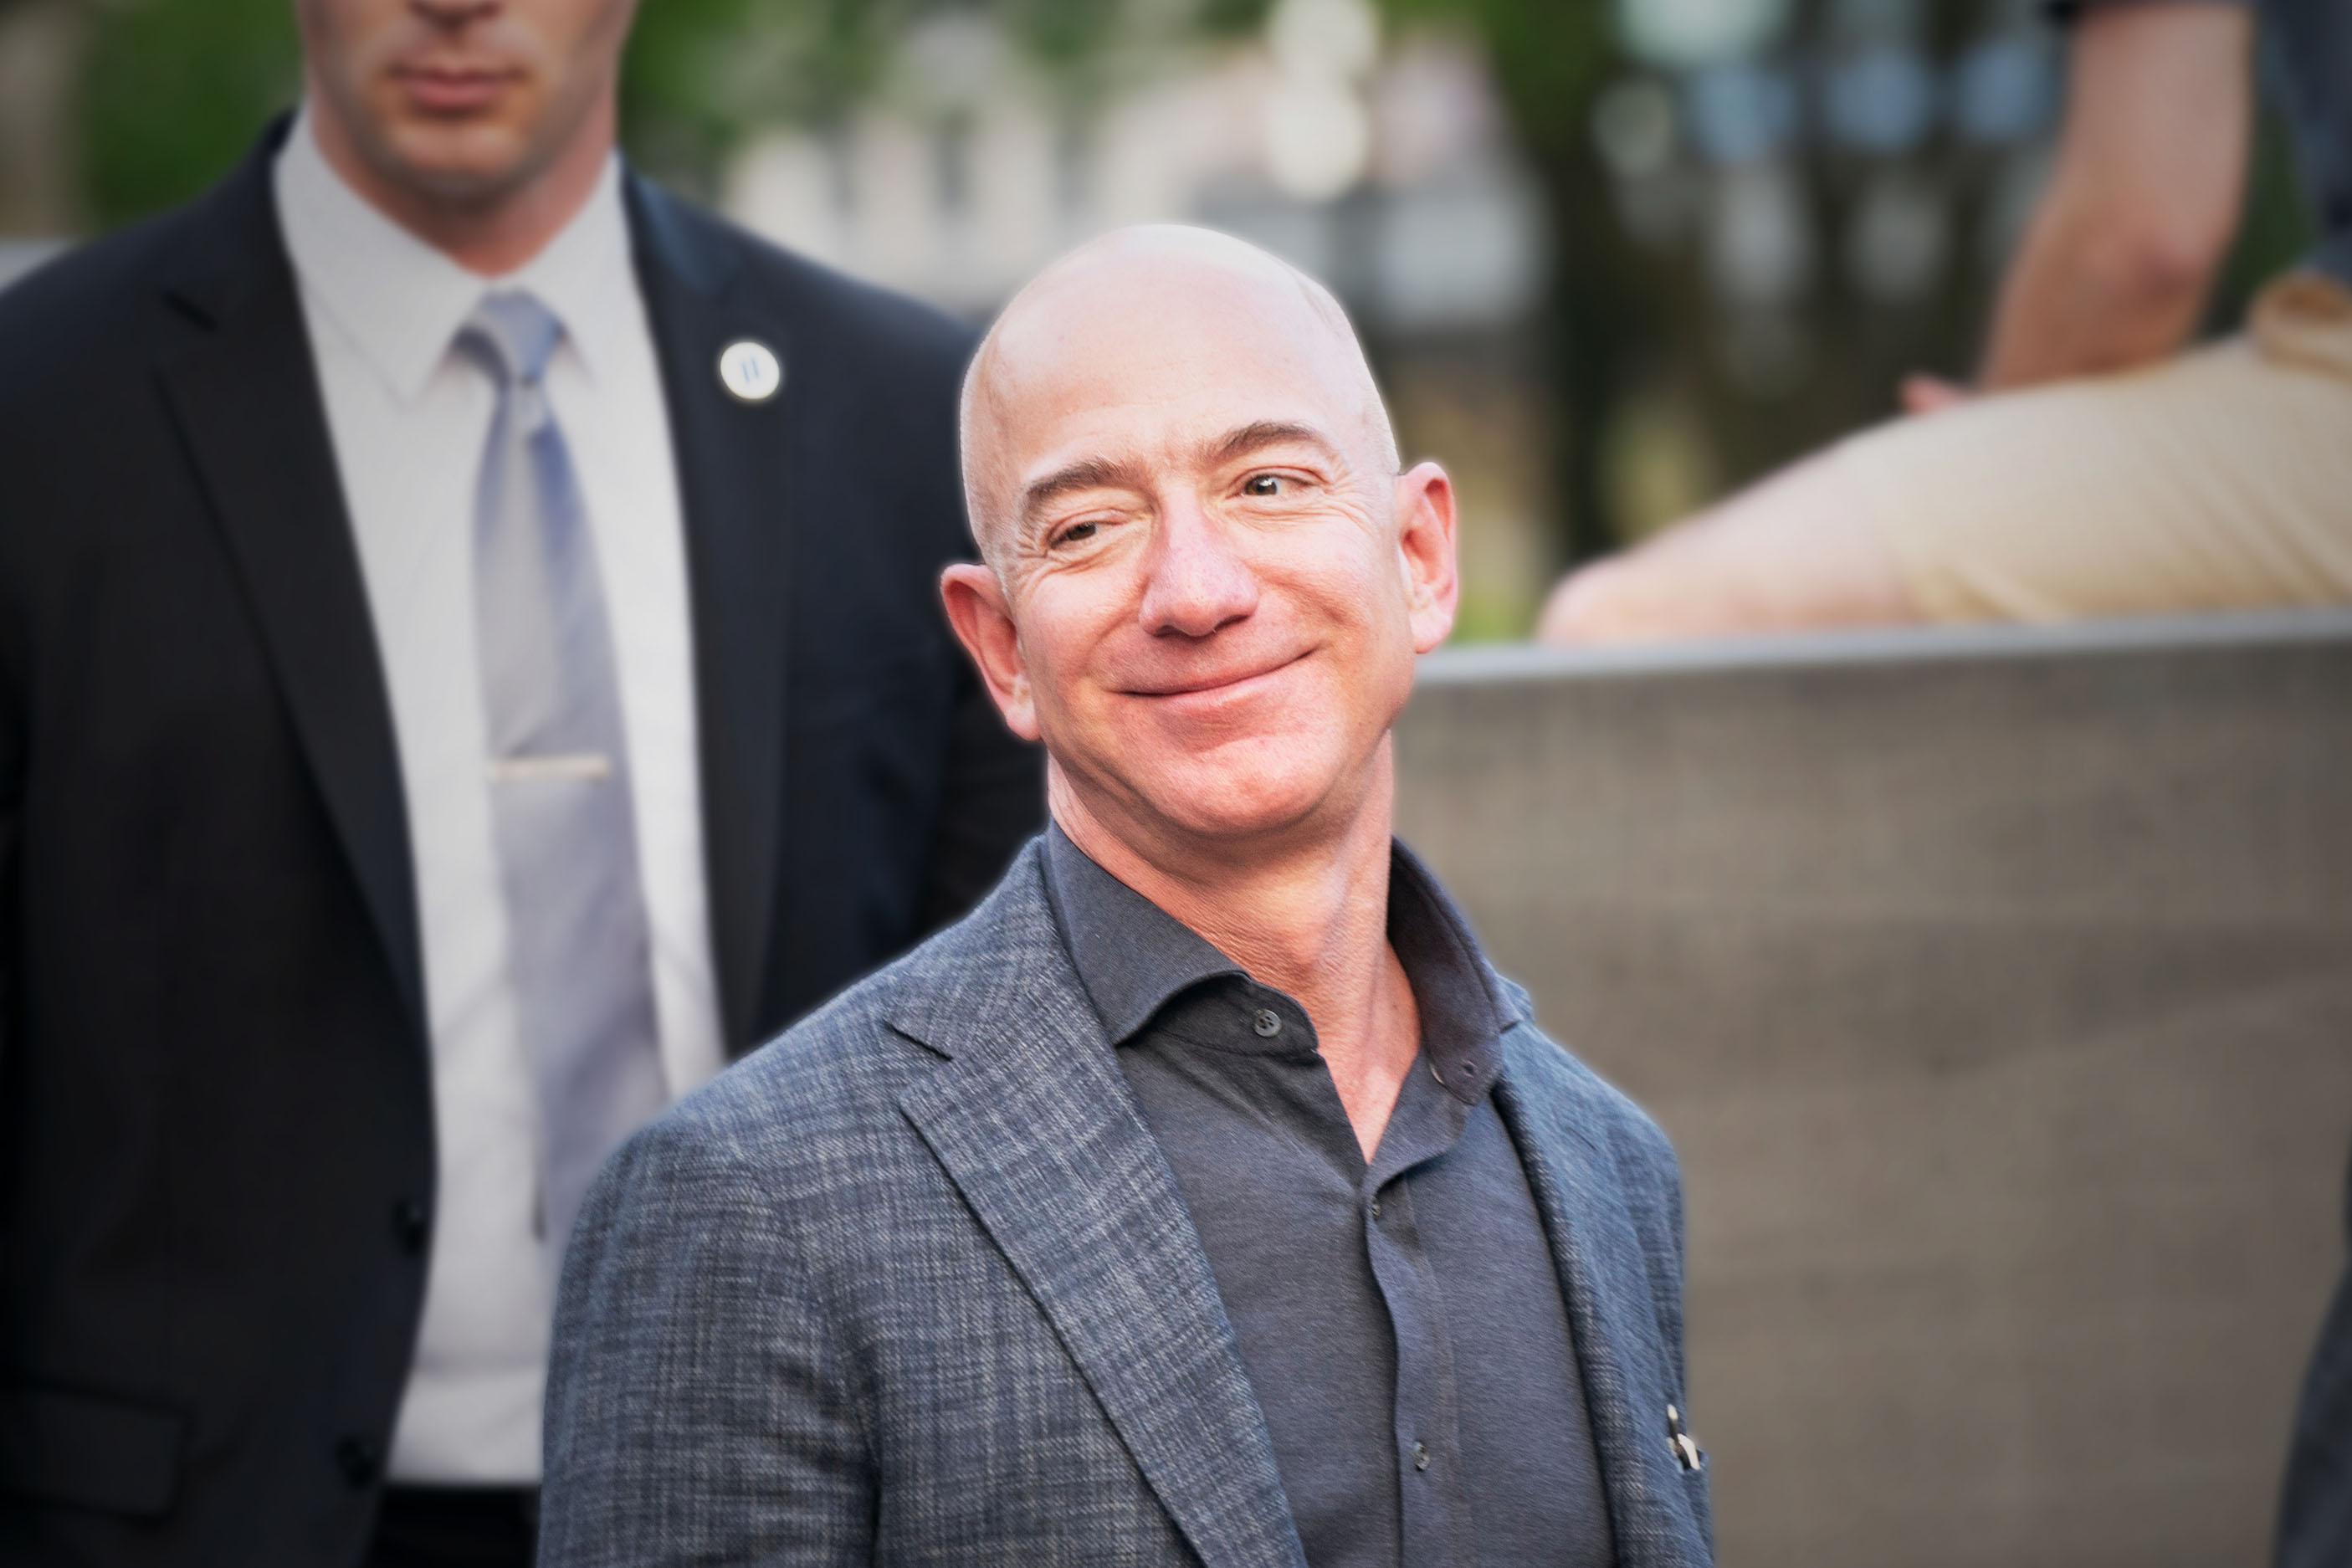 Jeff Bezos, fondateur d'Amazon, dit vouloir donner sa fortune de son vivant... oui mais quand ?